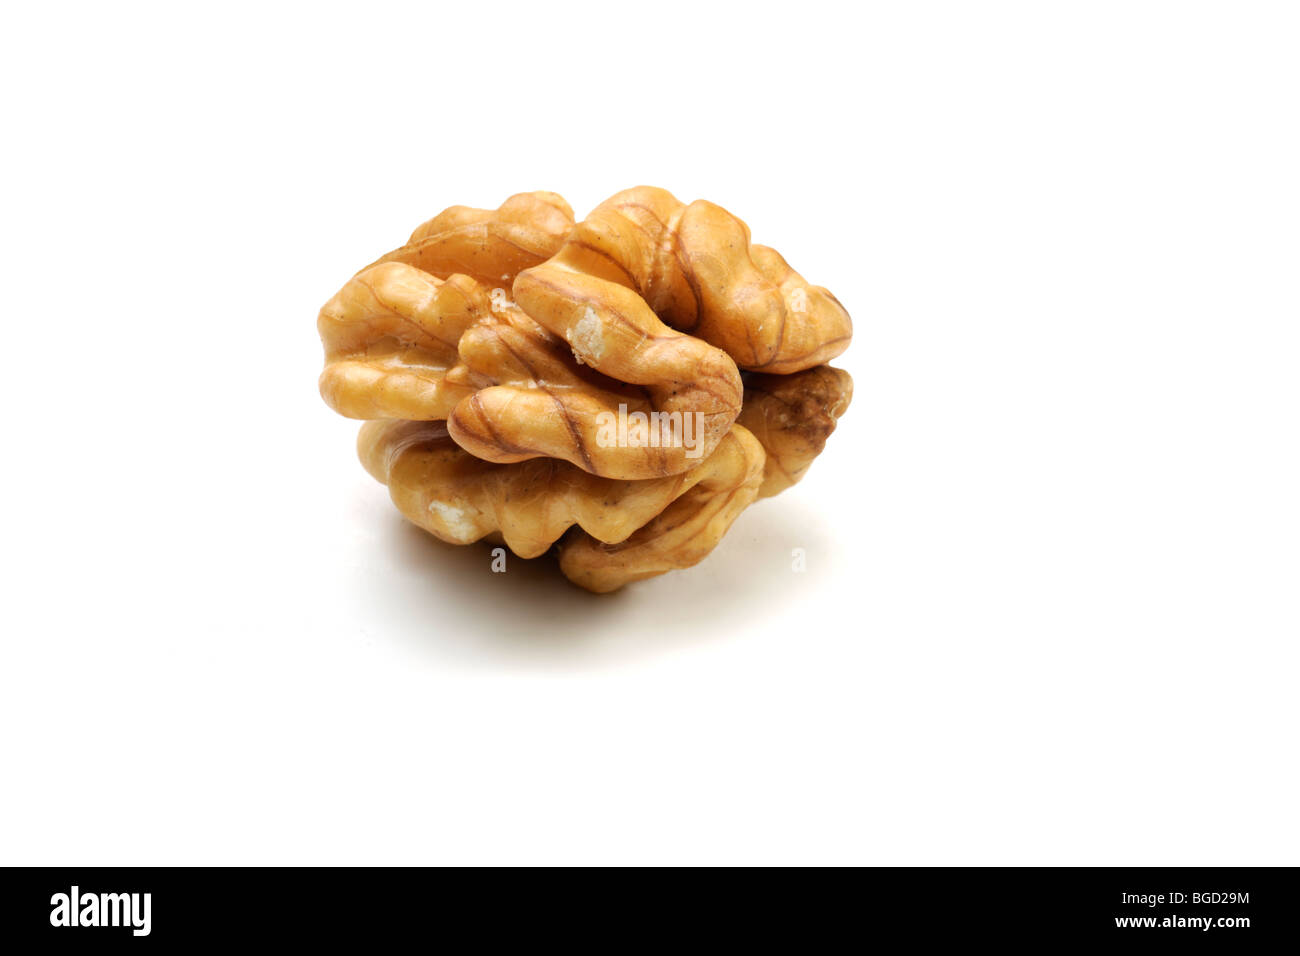 Whole shelled walnut (Juglans L.) on white background Stock Photo